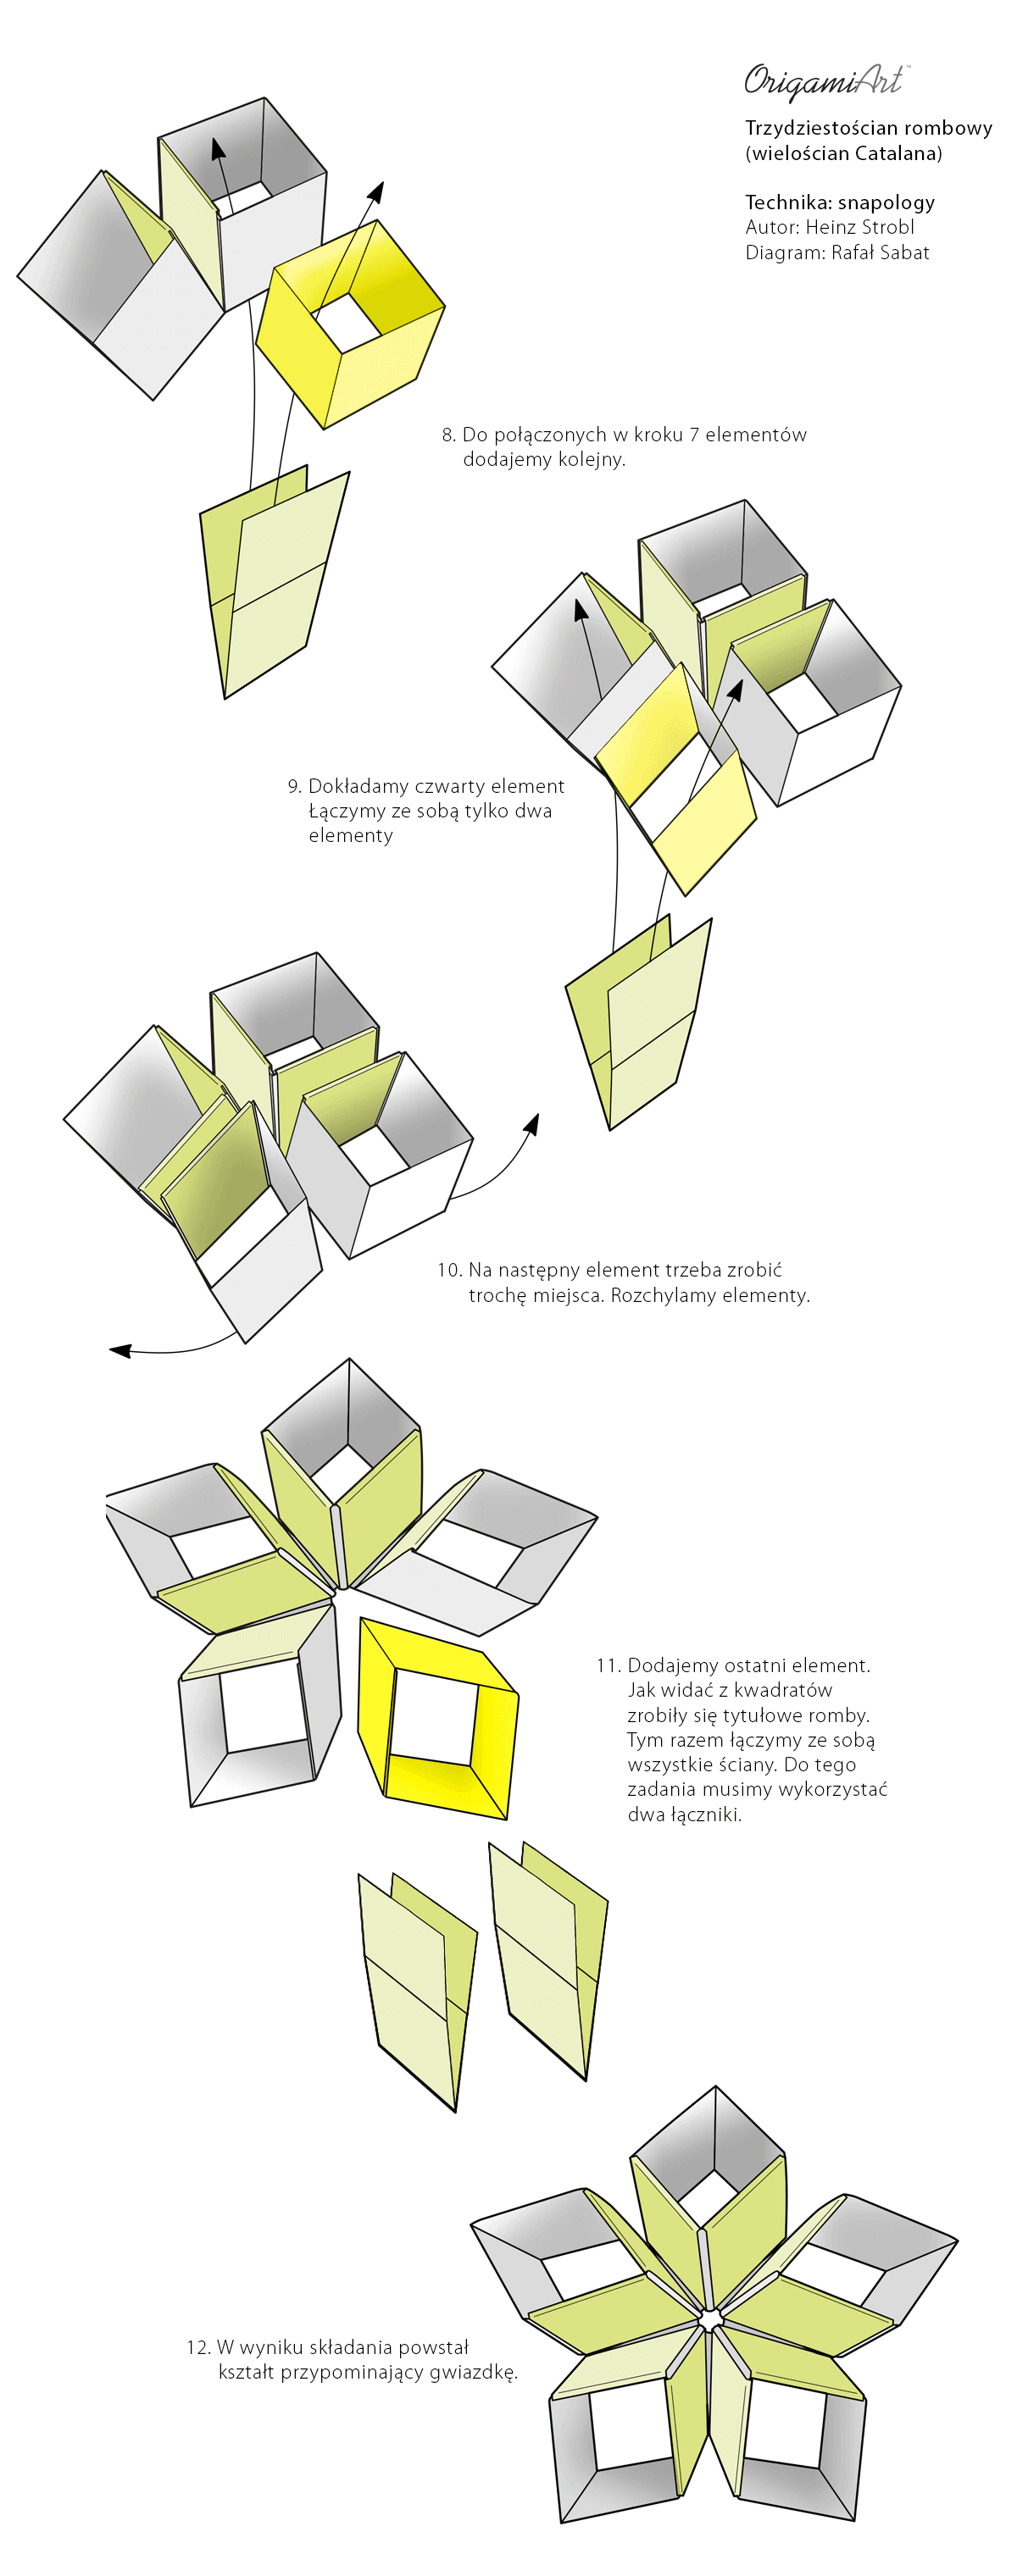 Origami z pasków - snapology